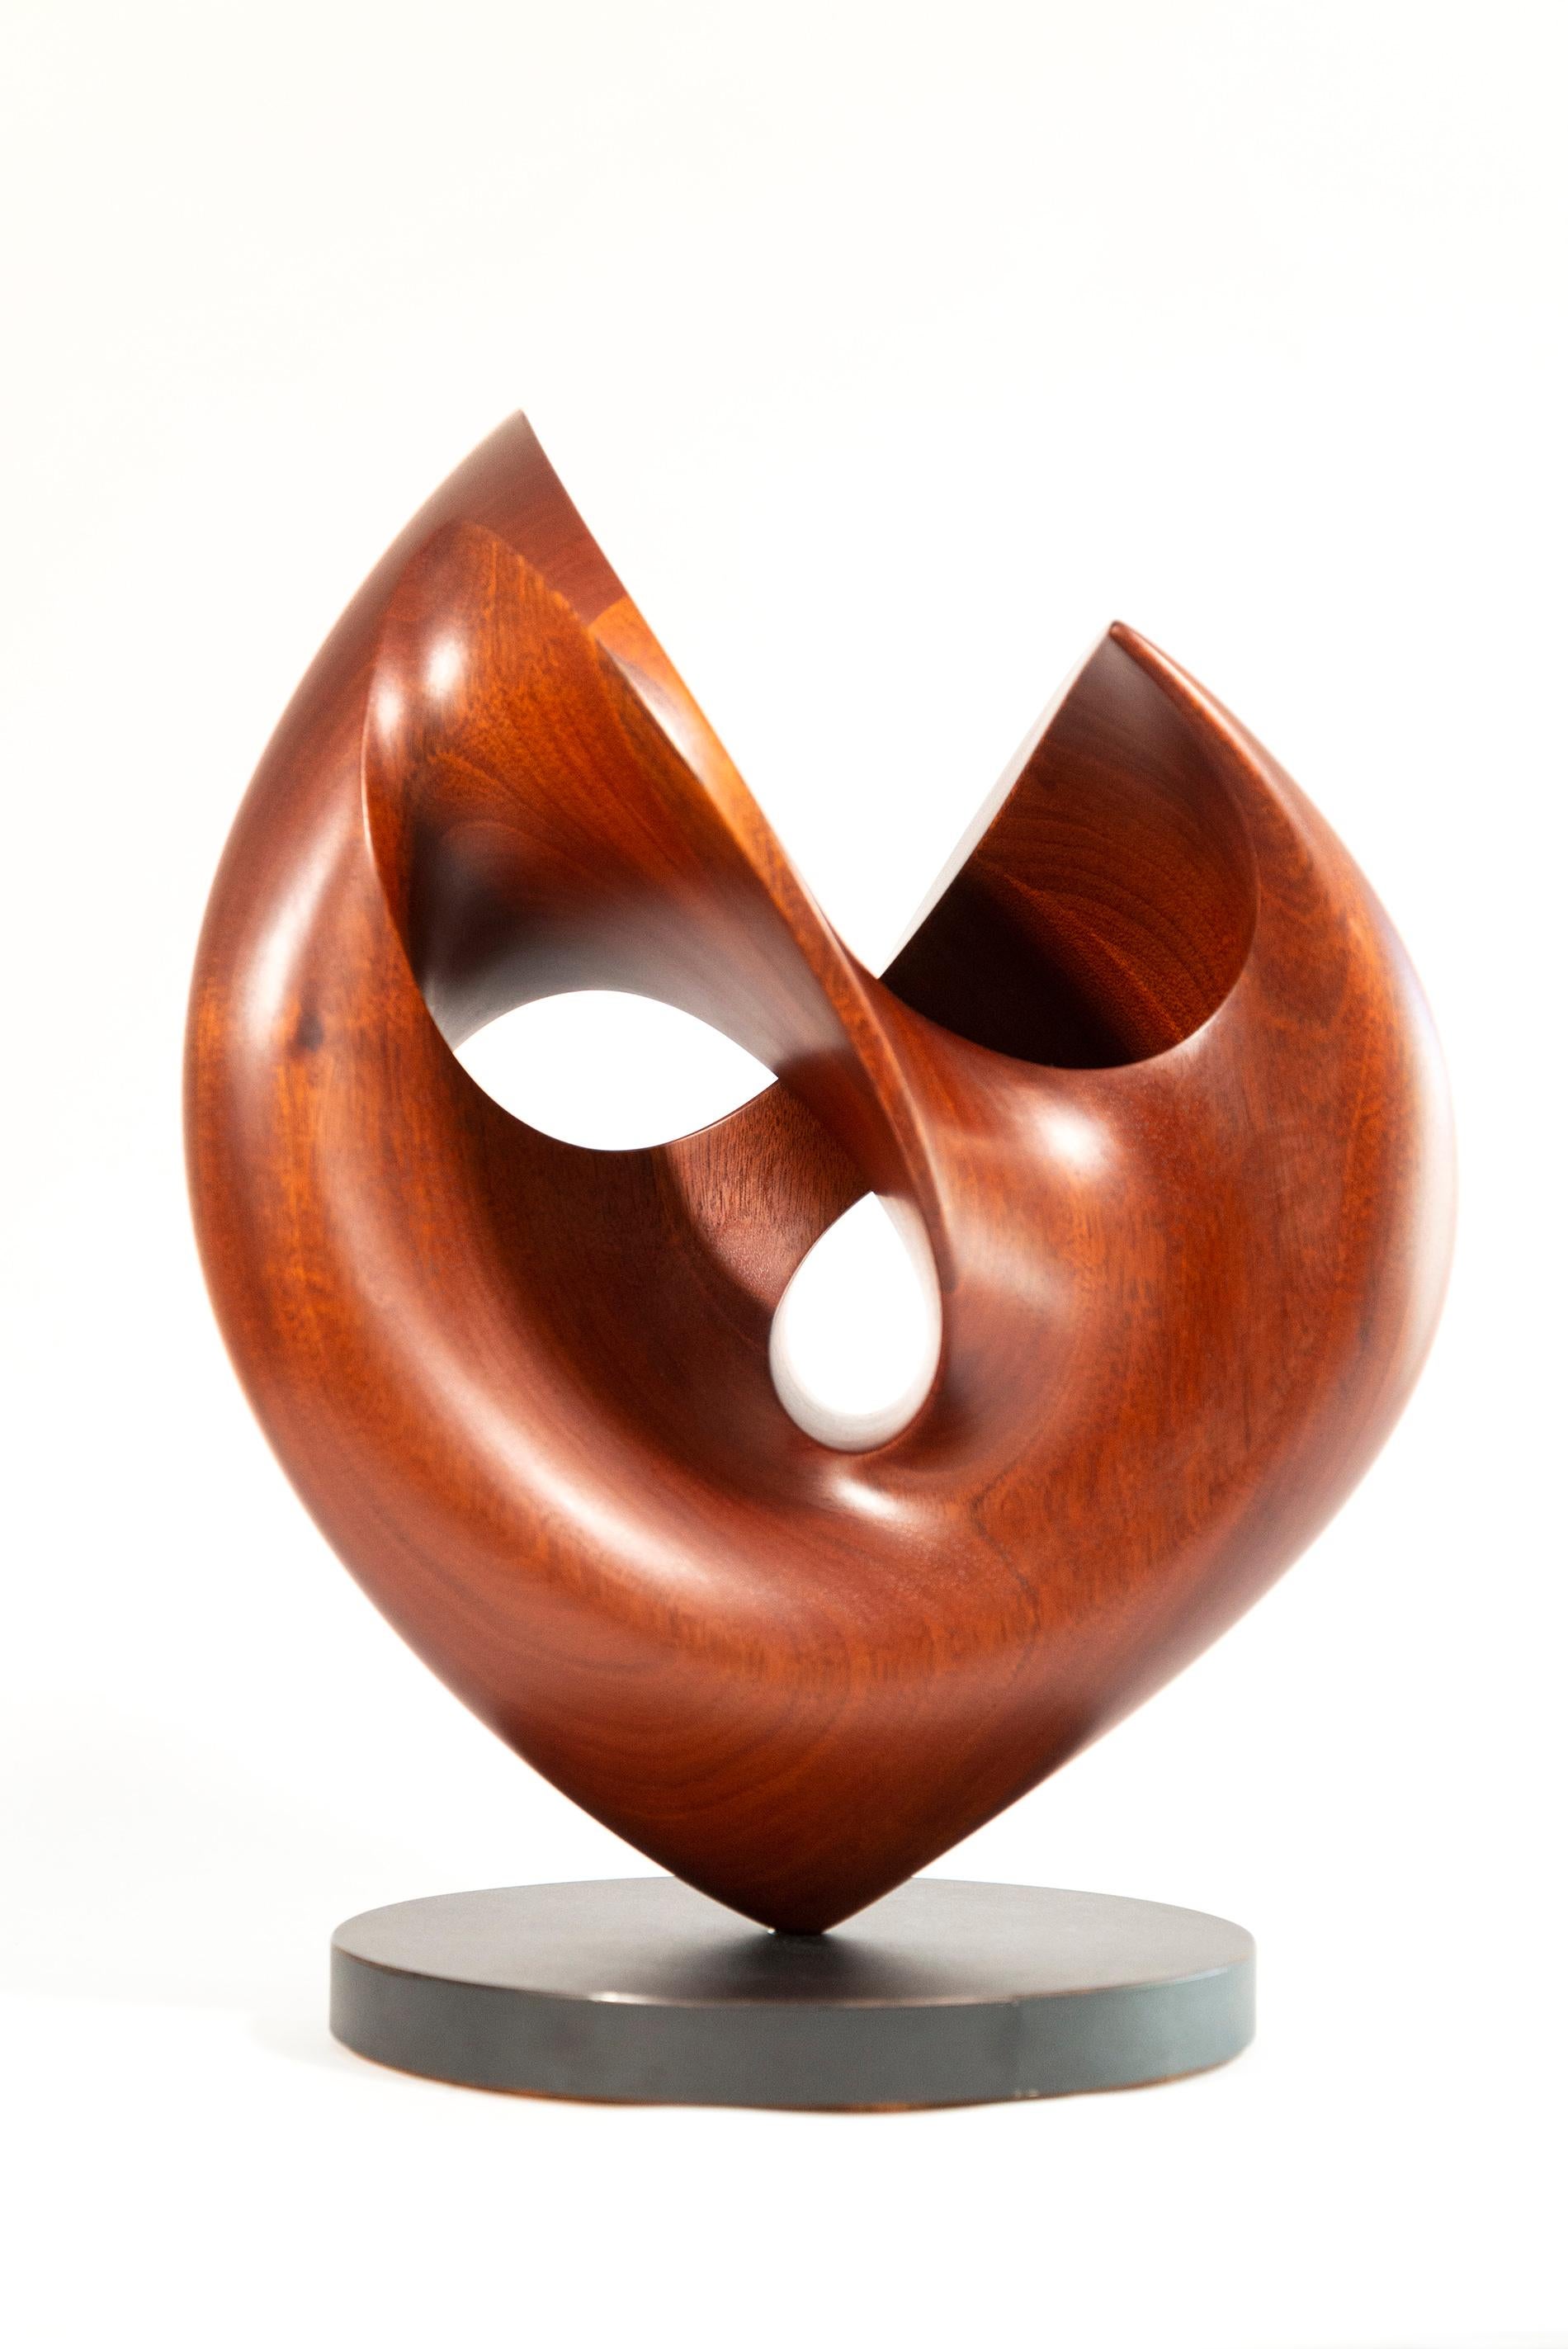 Senza Misura - sculpture lisse, polie, abstraite, contemporaine, en acajou - Sculpture de David Chamberlain